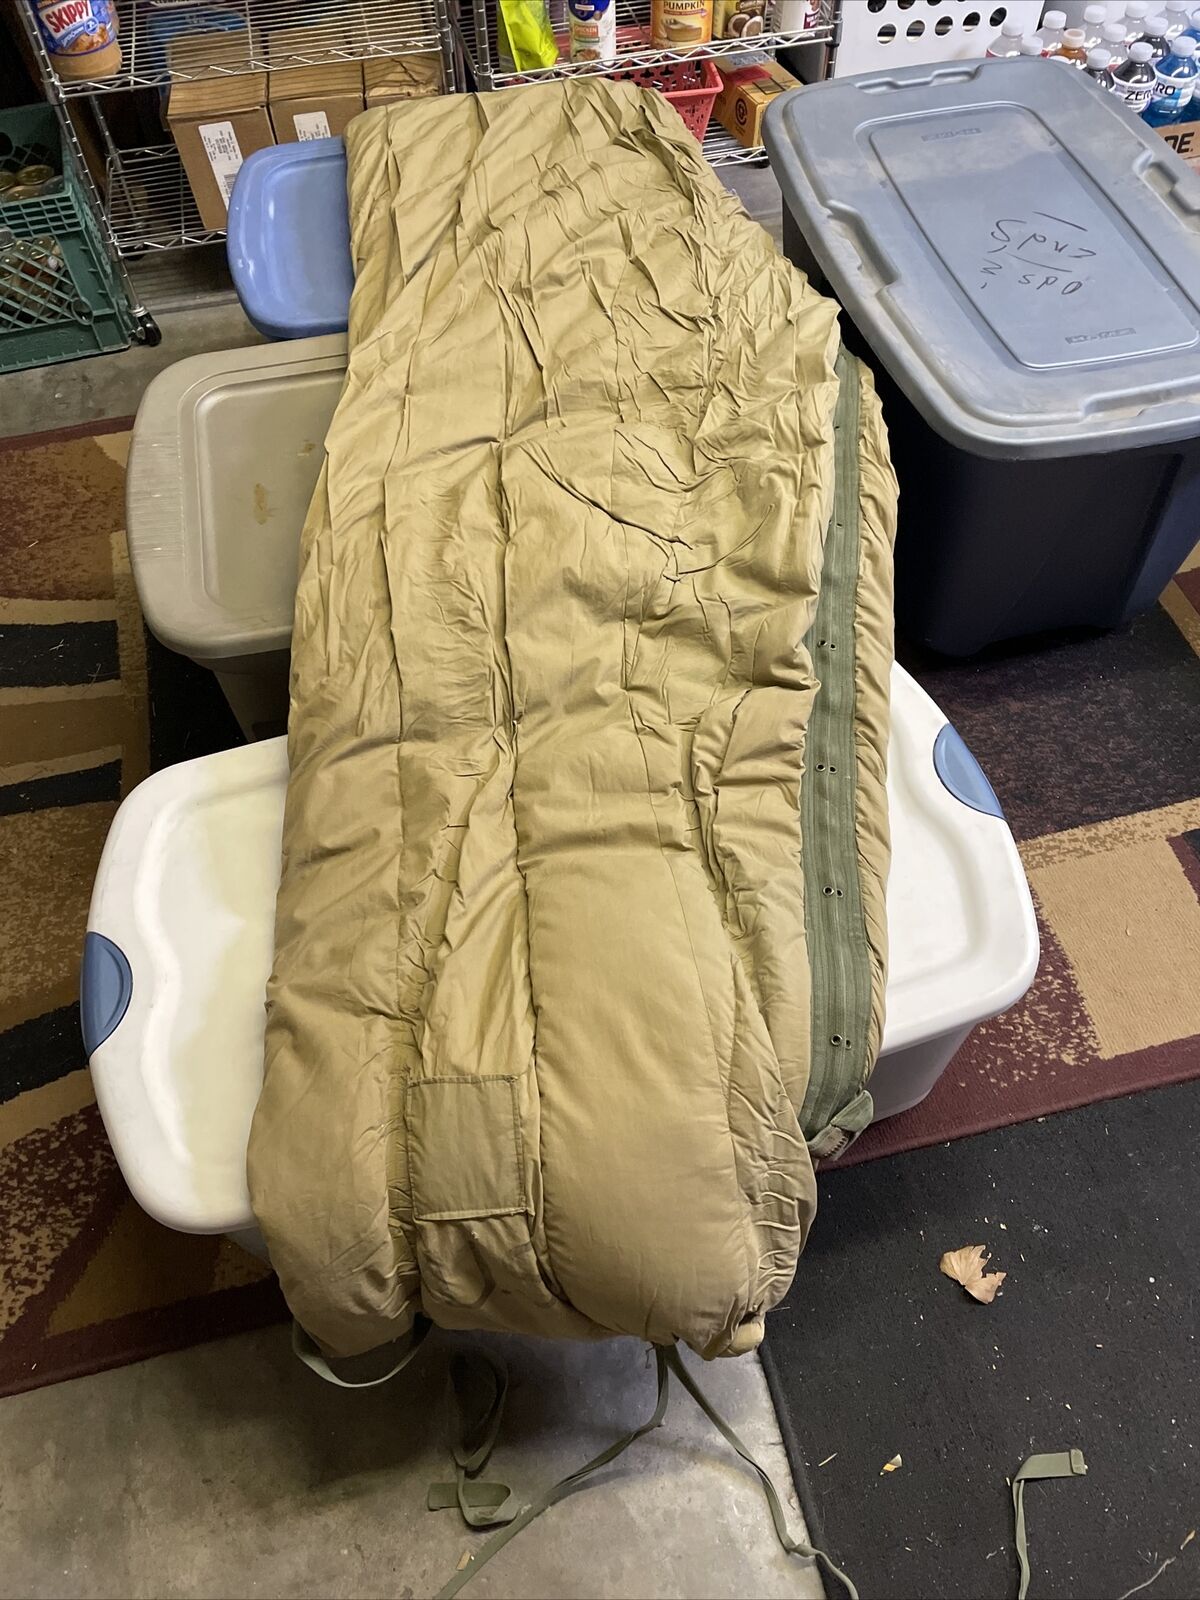 U S Army Vintage Sleeping Bag